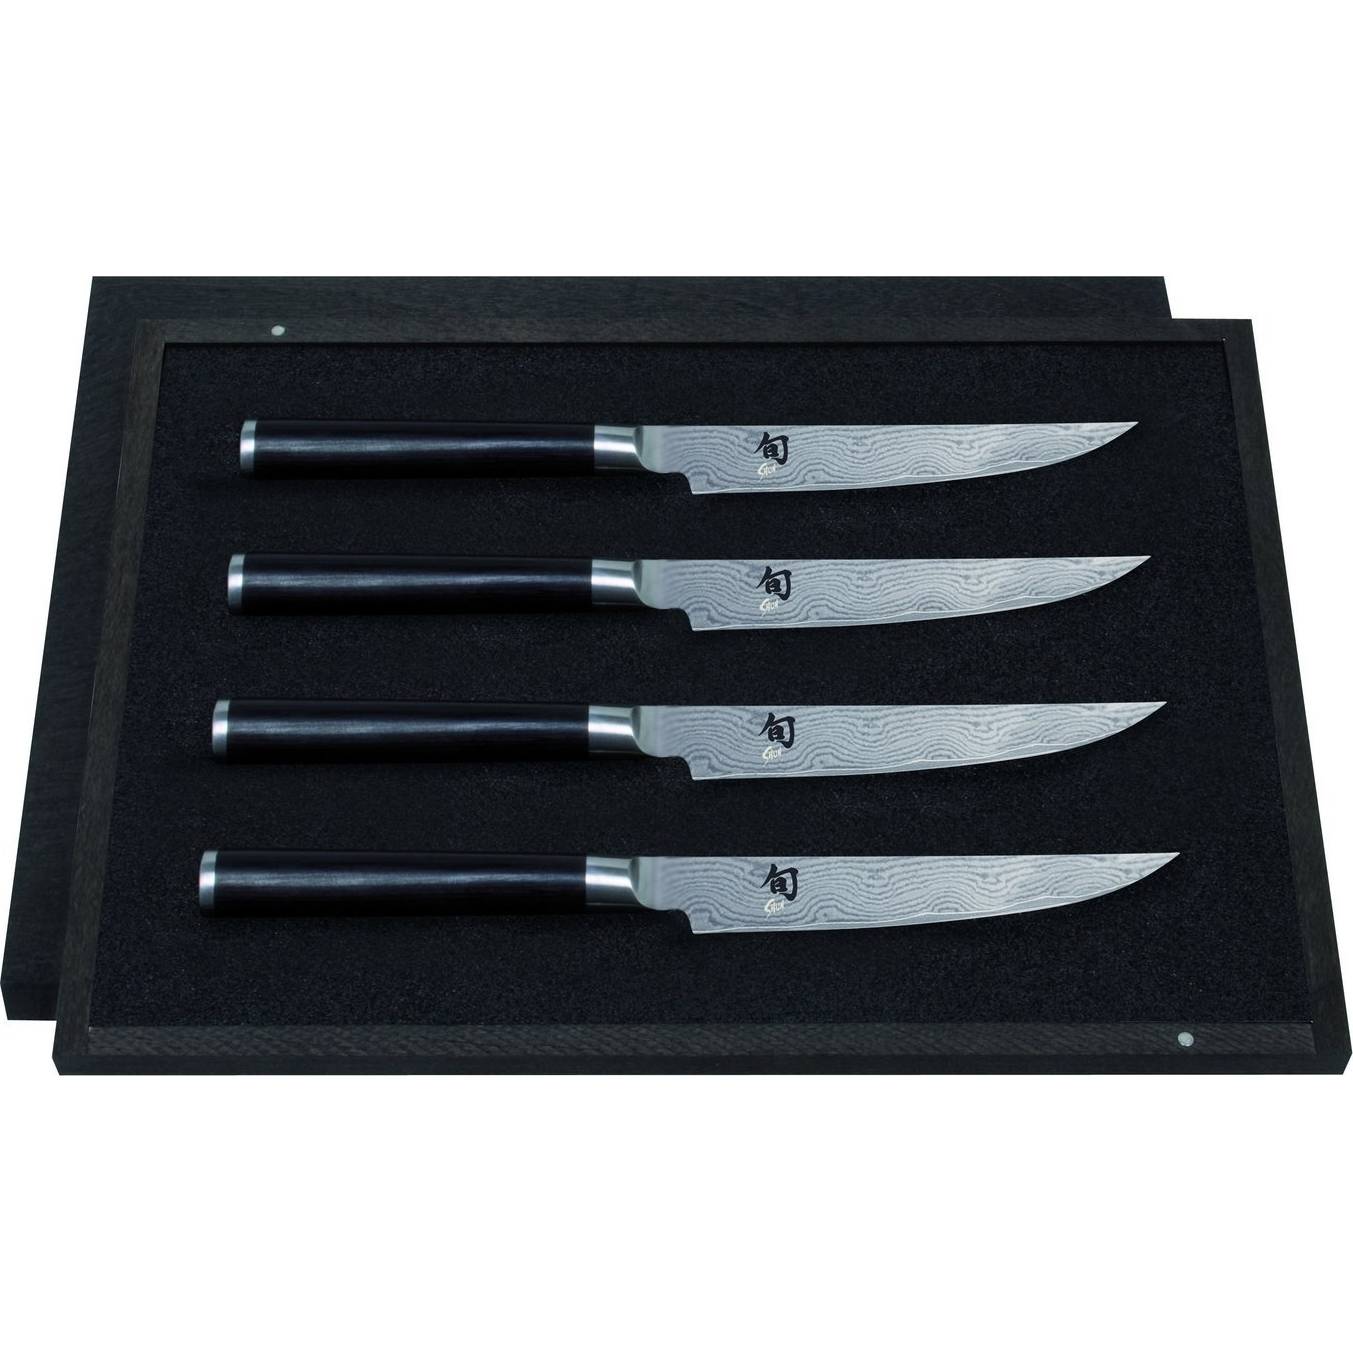 Sada kuchyňských nožů SHUN set – 4ks - KAI